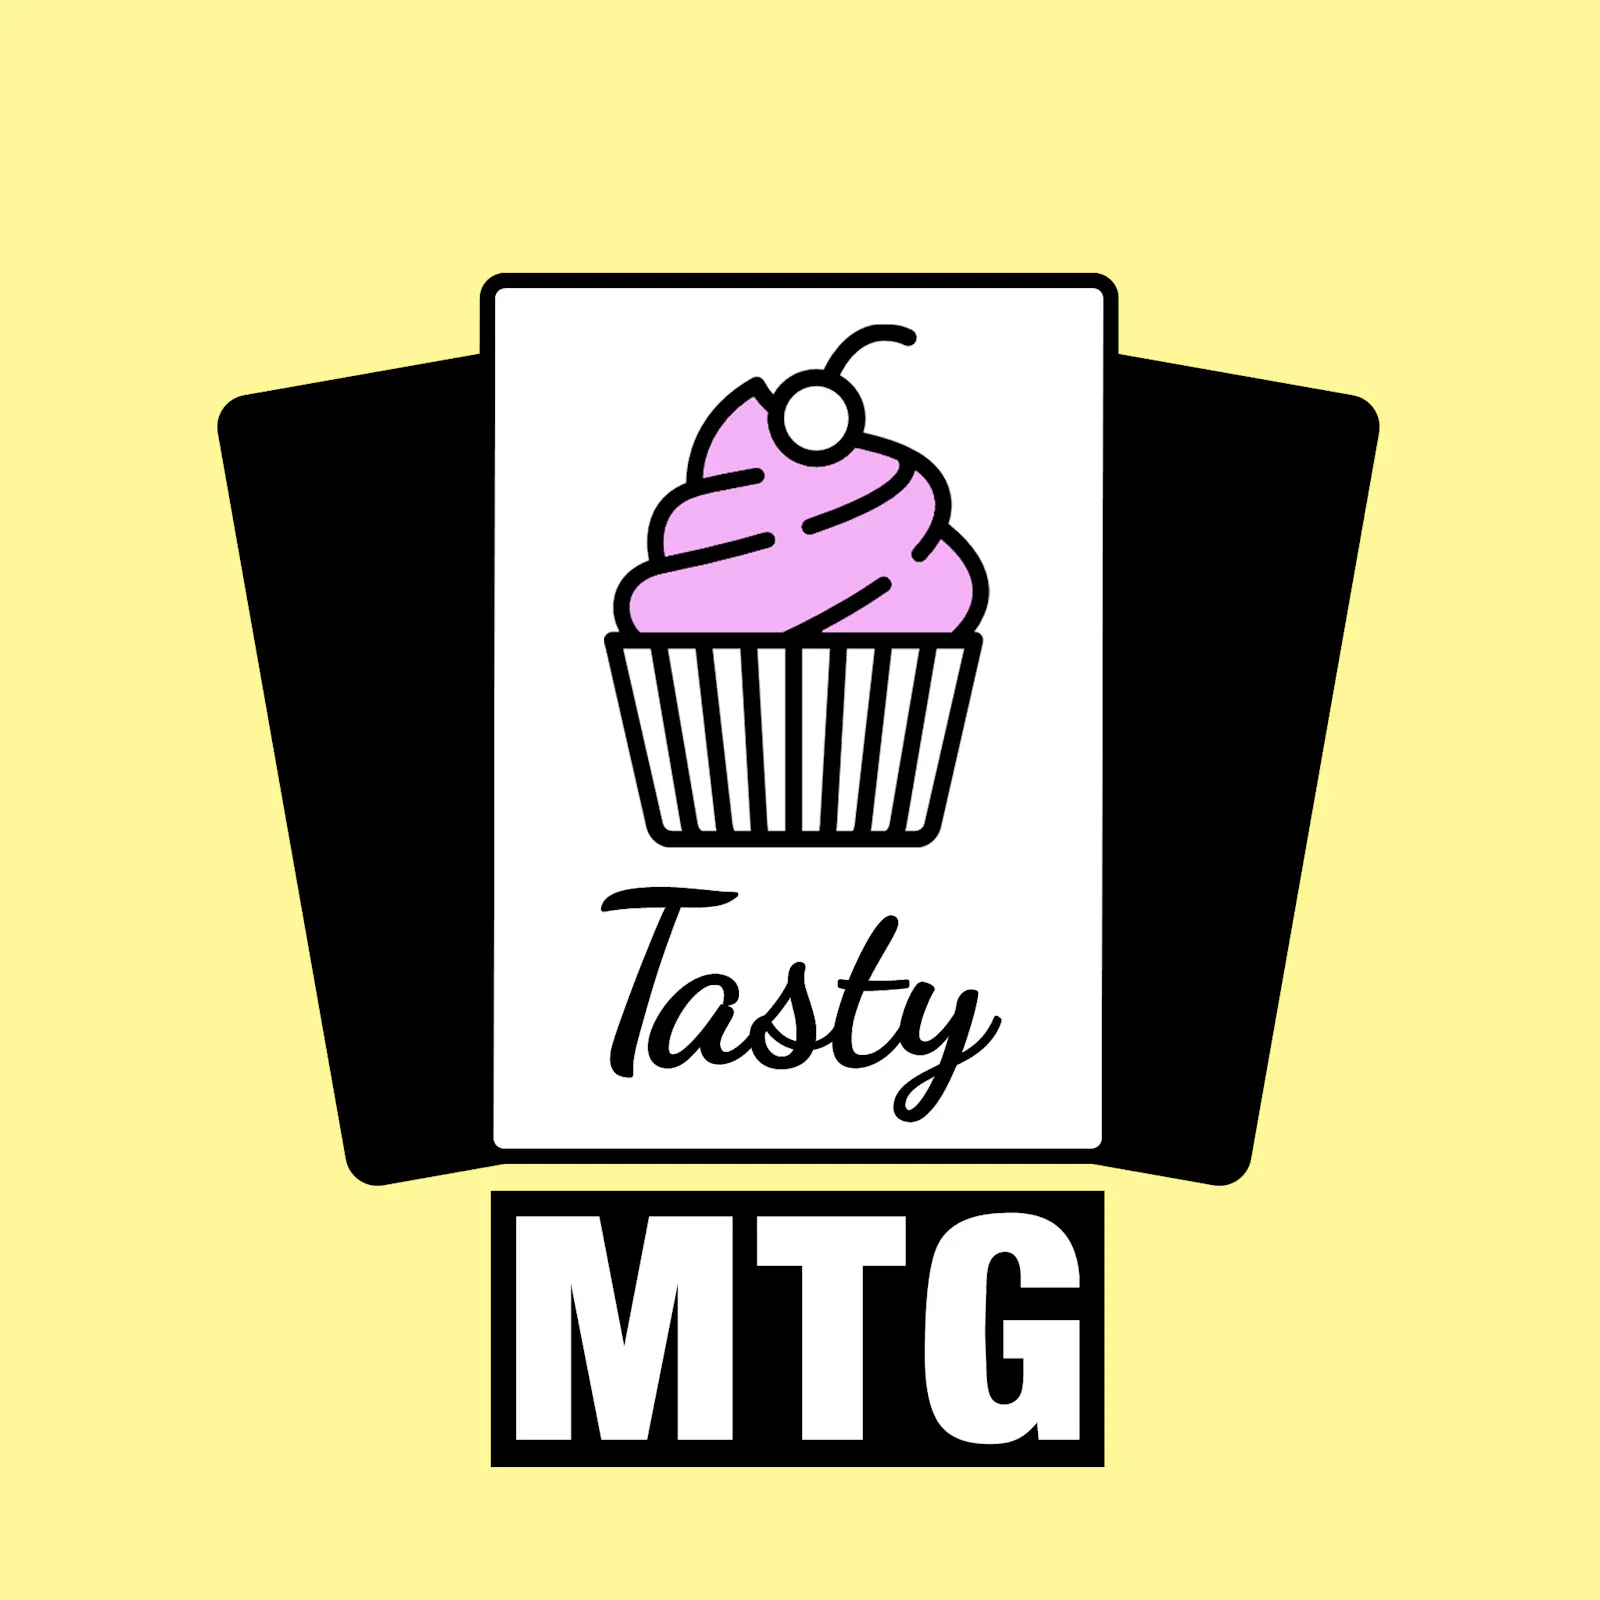 Das Tasty-MTG-Logo mit dem rosa Cupcake und dem Schriftzug "Tasty MTG"